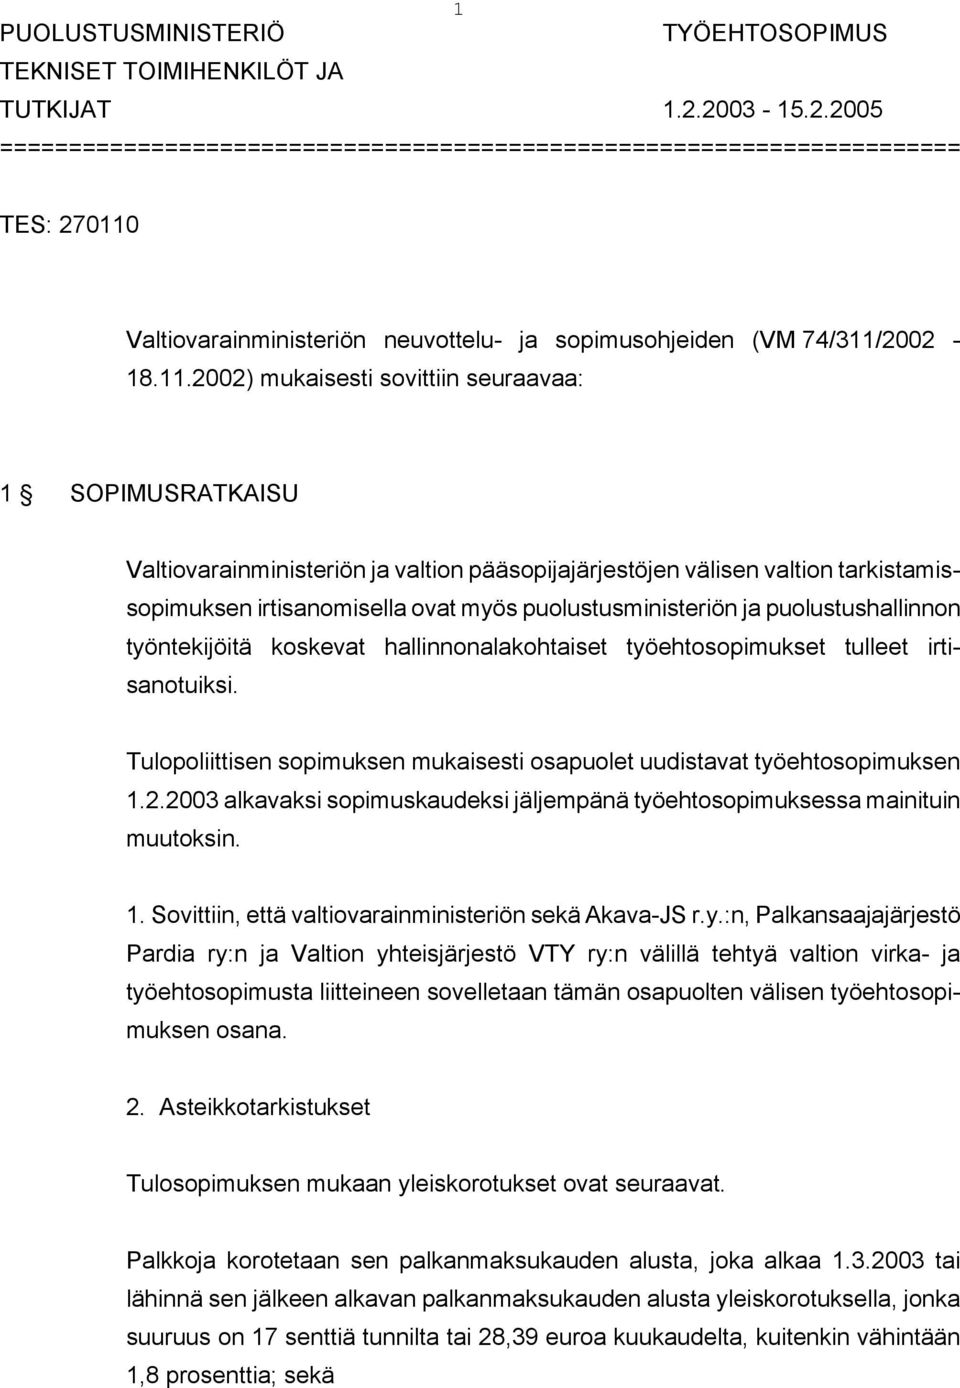 Valtiovarainministeriön neuvottelu- ja sopimusohjeiden (VM 74/311/